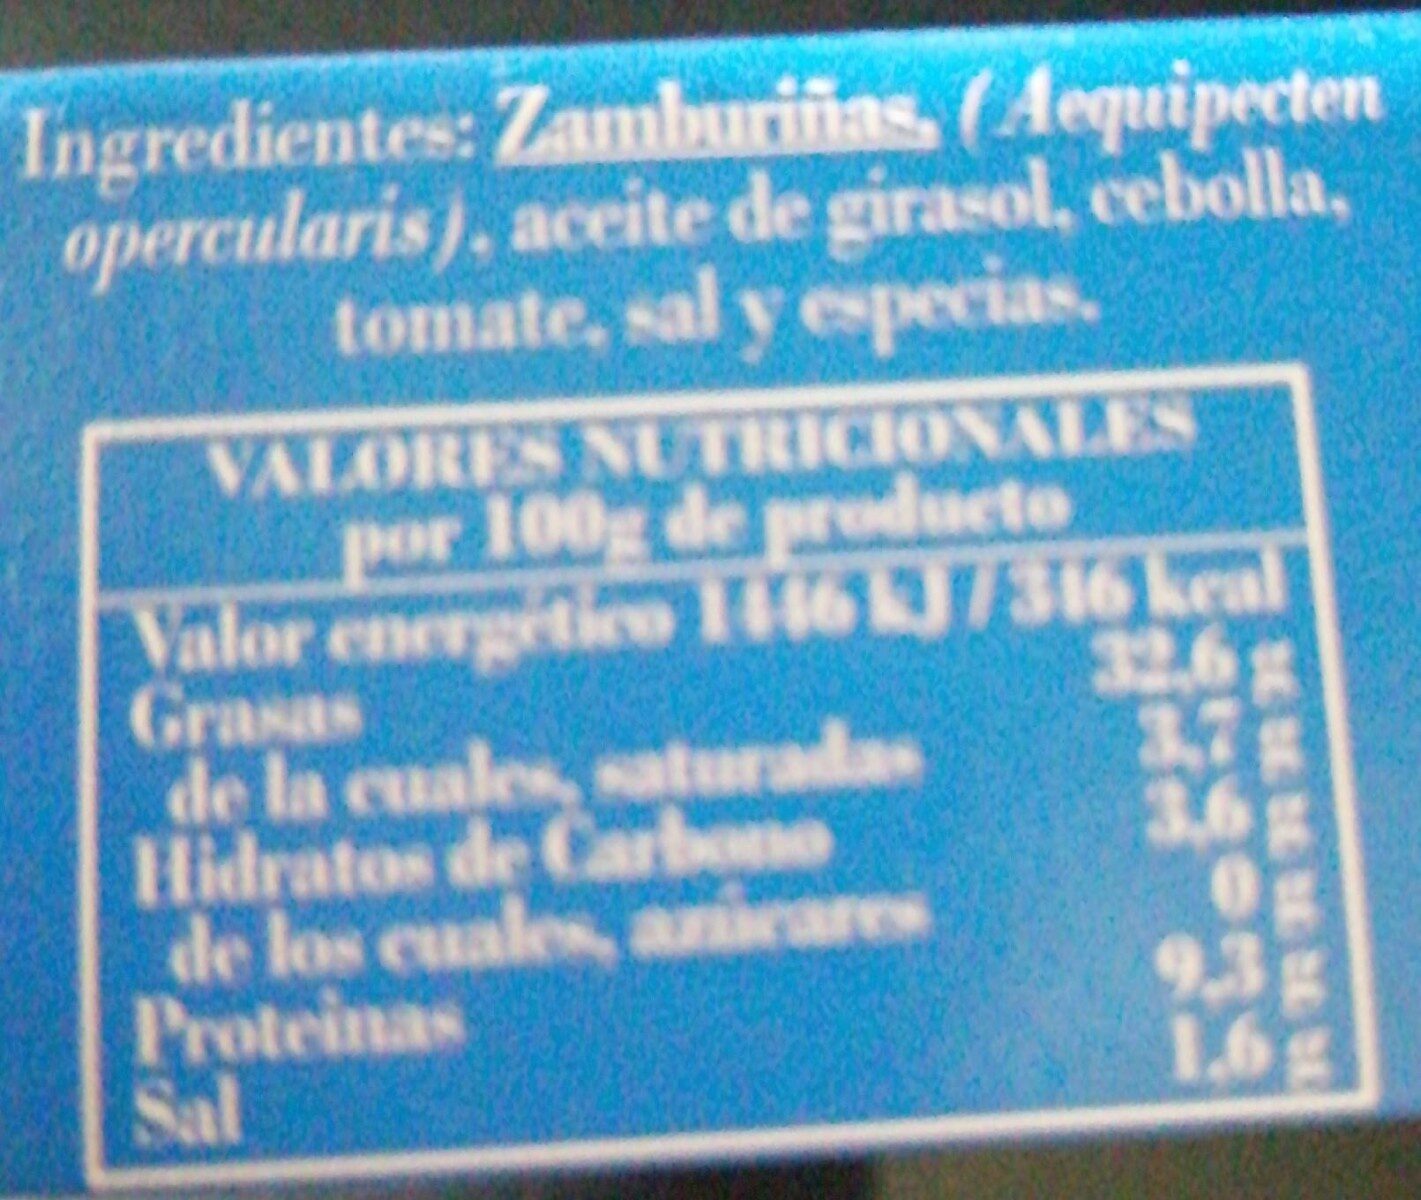 Zamburiñas en salsa de vieira - Nutrition facts - es